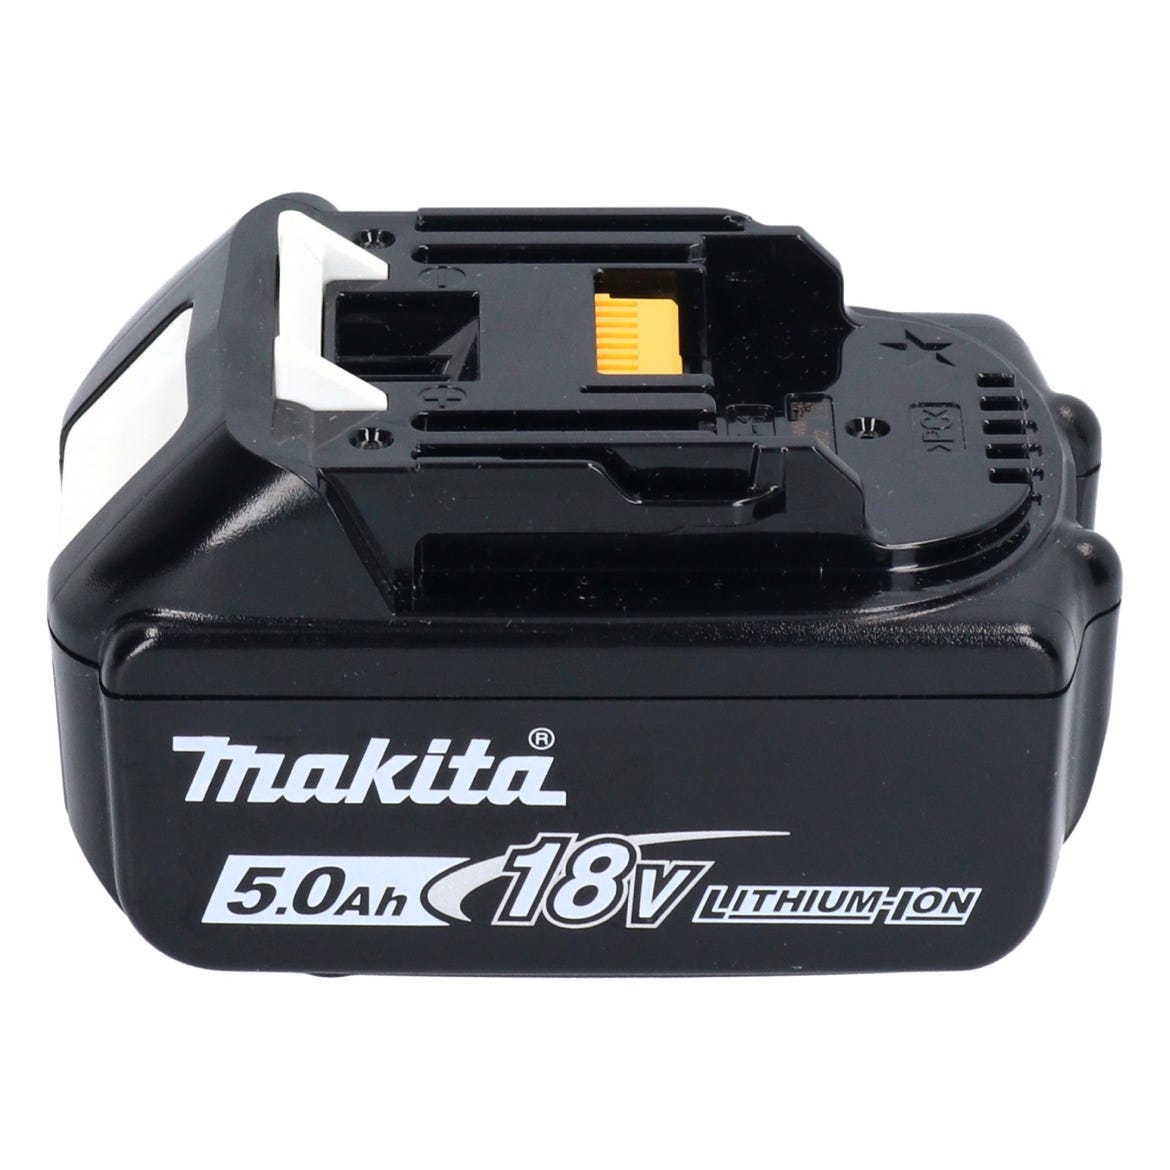 Makita DHR 183 T1 marteau perforateur sans fil 18 V 1,7 J SDS plus sans balais + 1x batterie 5,0 Ah - sans kit chargeur 2